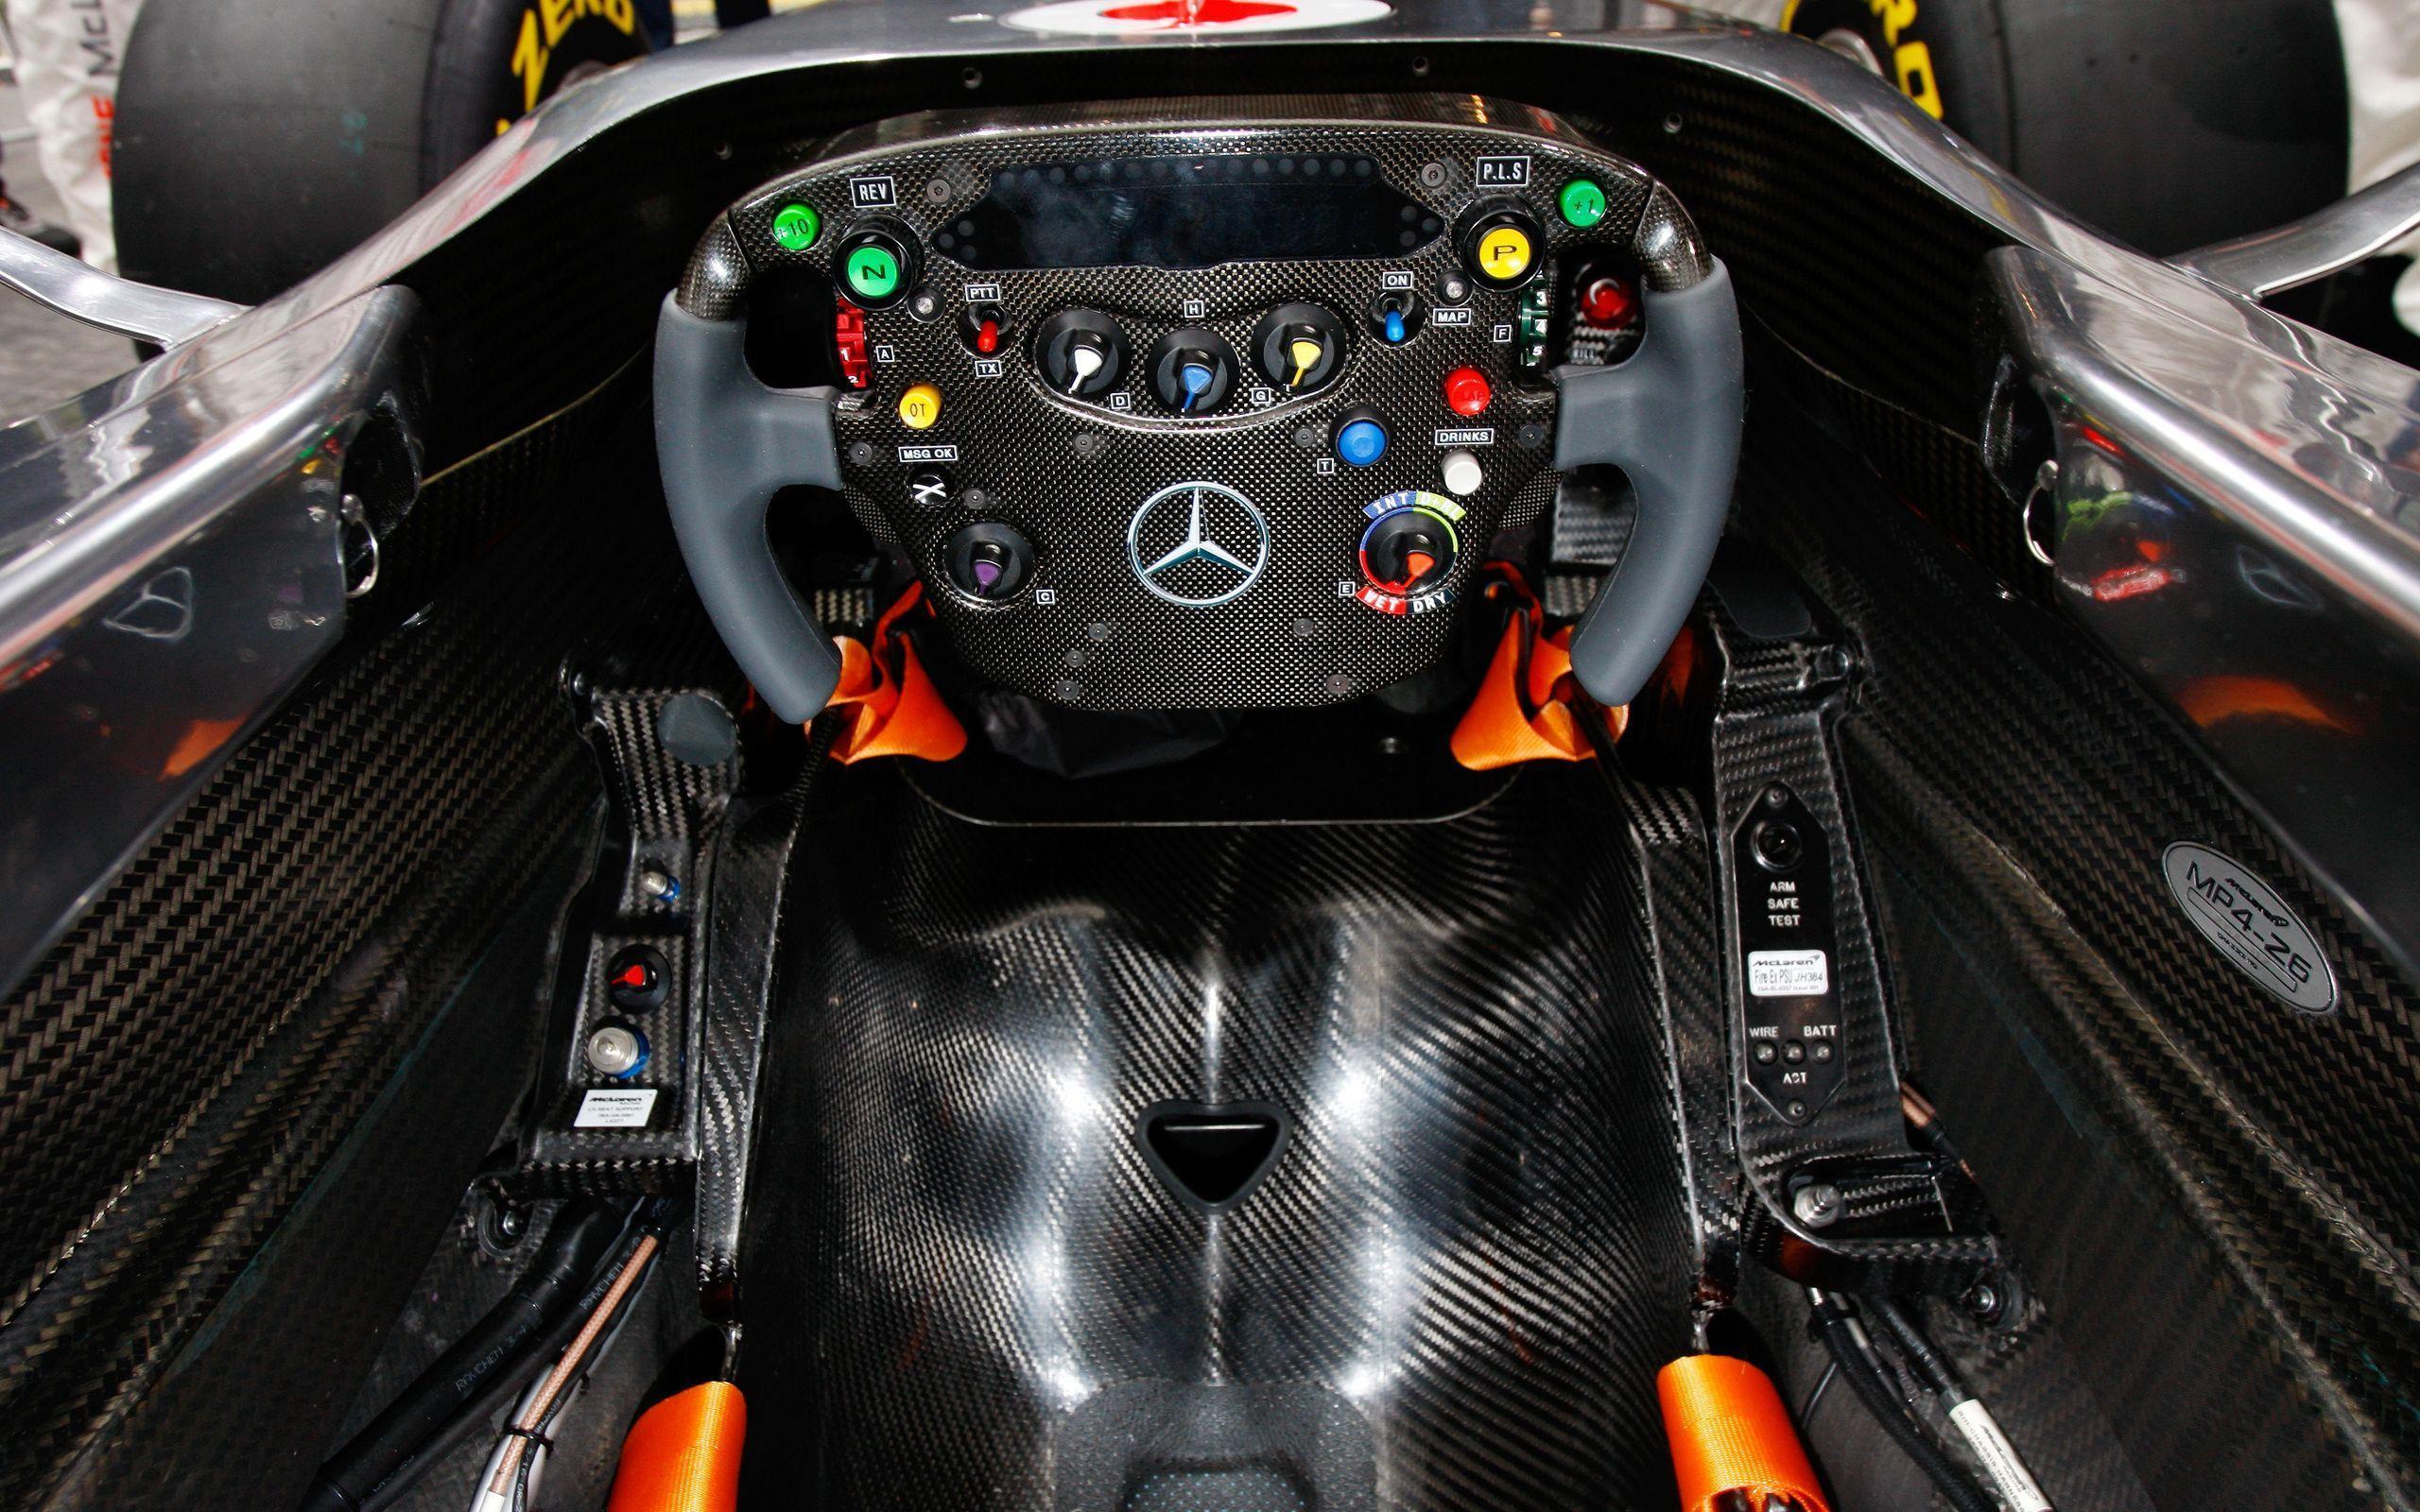 Mercedes F1 Wallpapers - Wallpaper Cave